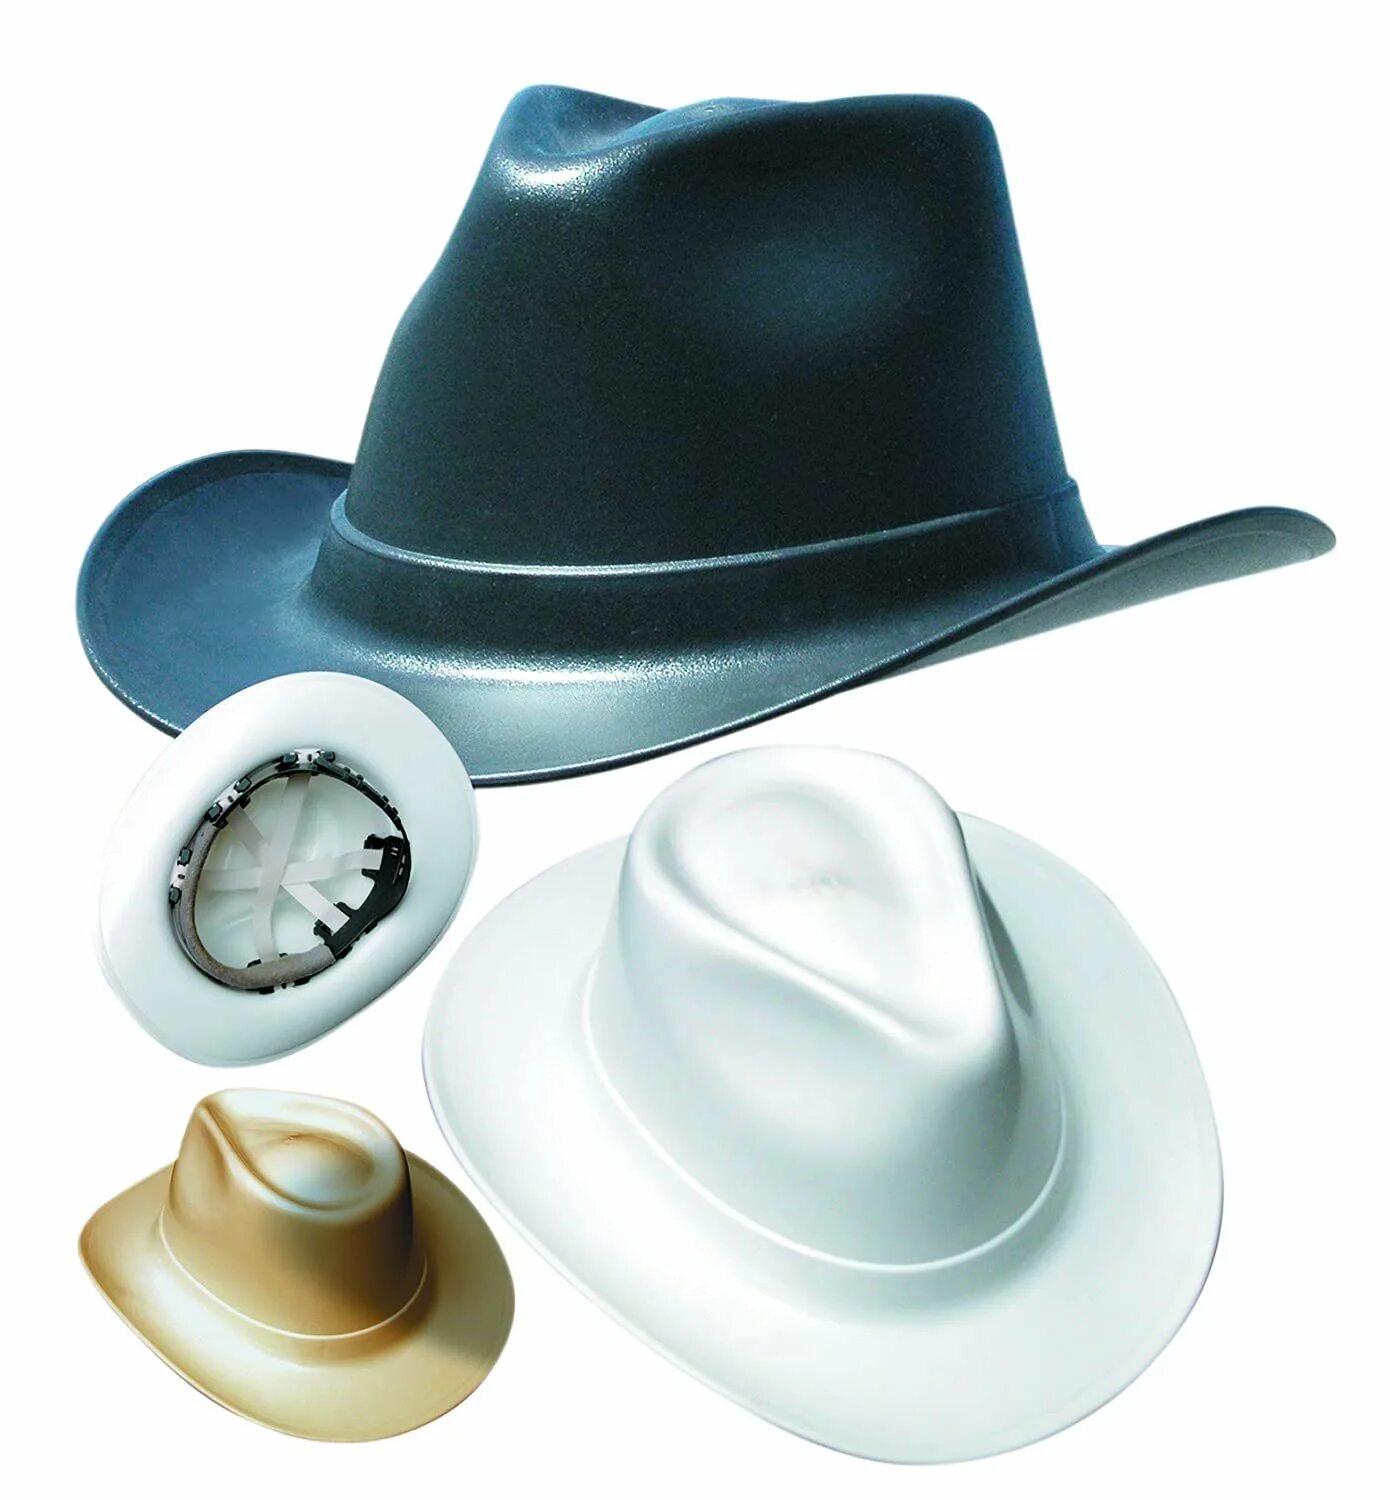 Купить каску шляпу строительную. Vulcan Cowboy Style hard hat White. Каска защитная ковбойская шляпа. Строительная каска в виде ковбойской шляпы.